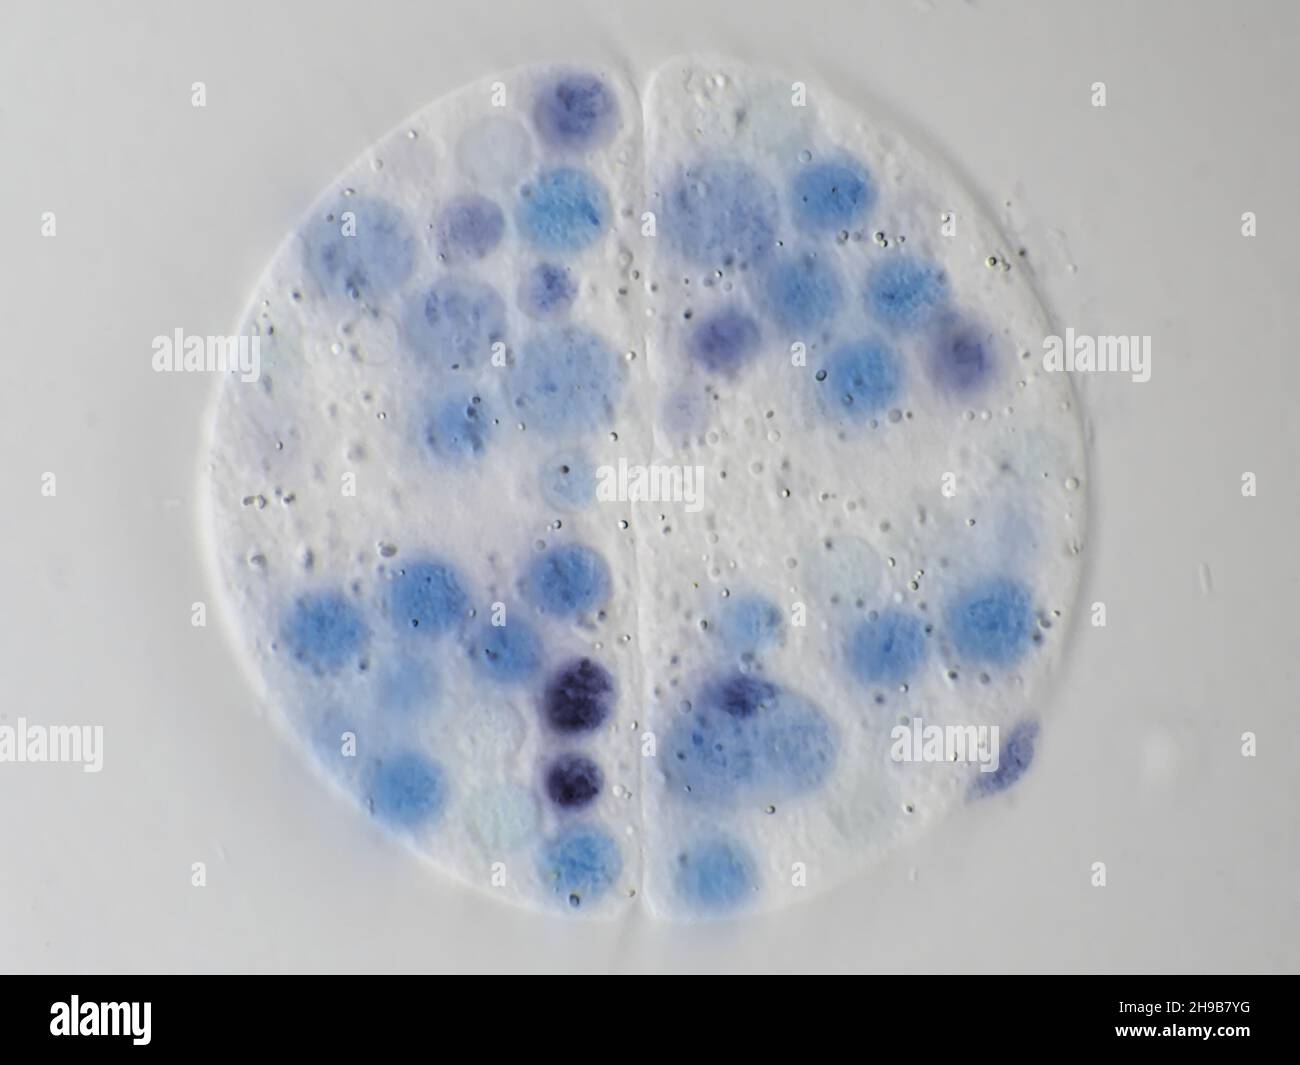 Microbe protiste d'un échantillon d'eau, division cellulaire sous le microscope, champ de vision horizontal d'environ 121 micromètre Banque D'Images